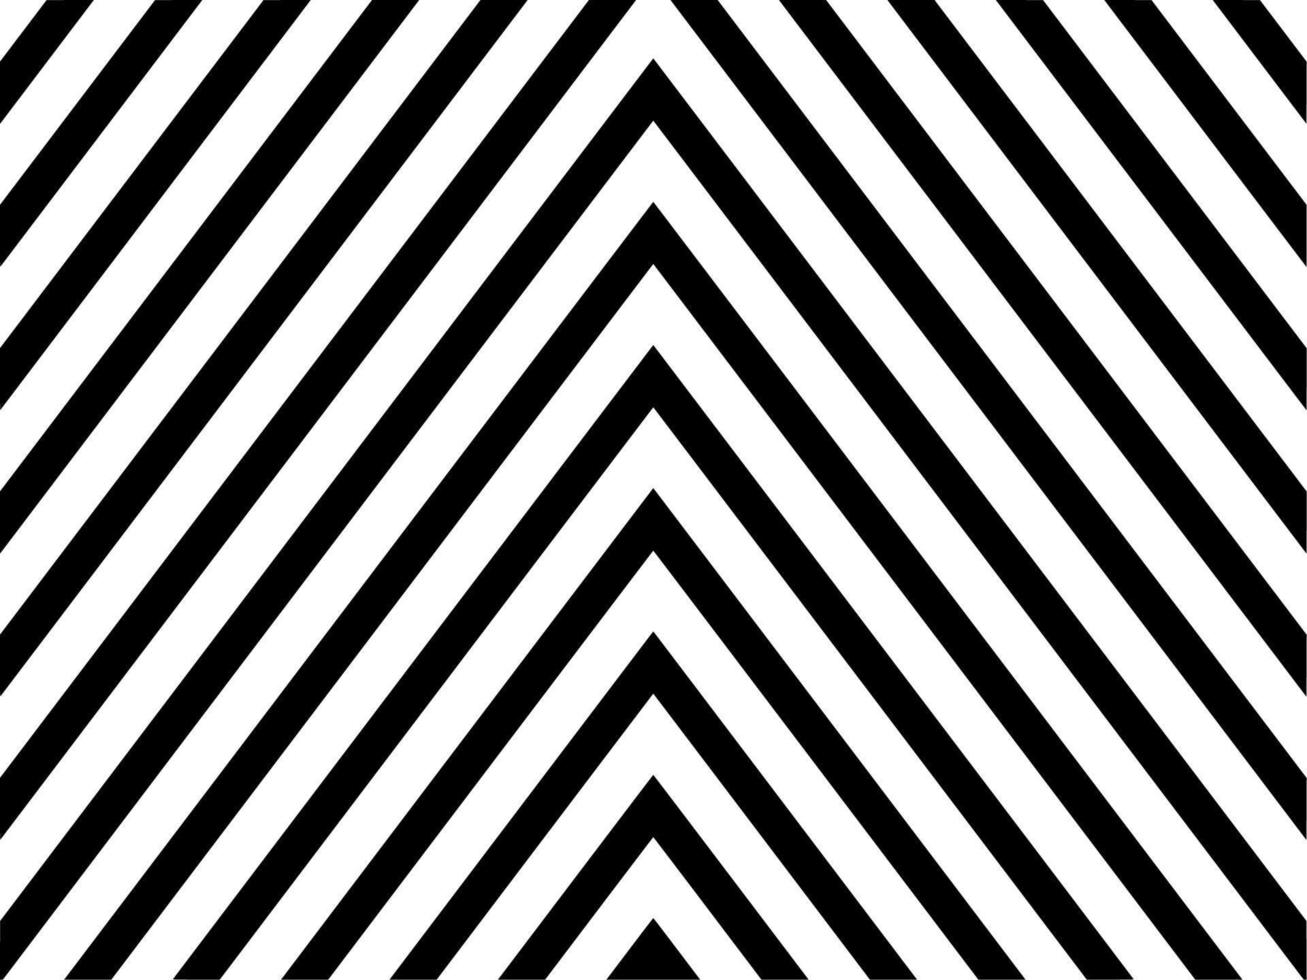 zwart en wit van abstract achtergrond vector